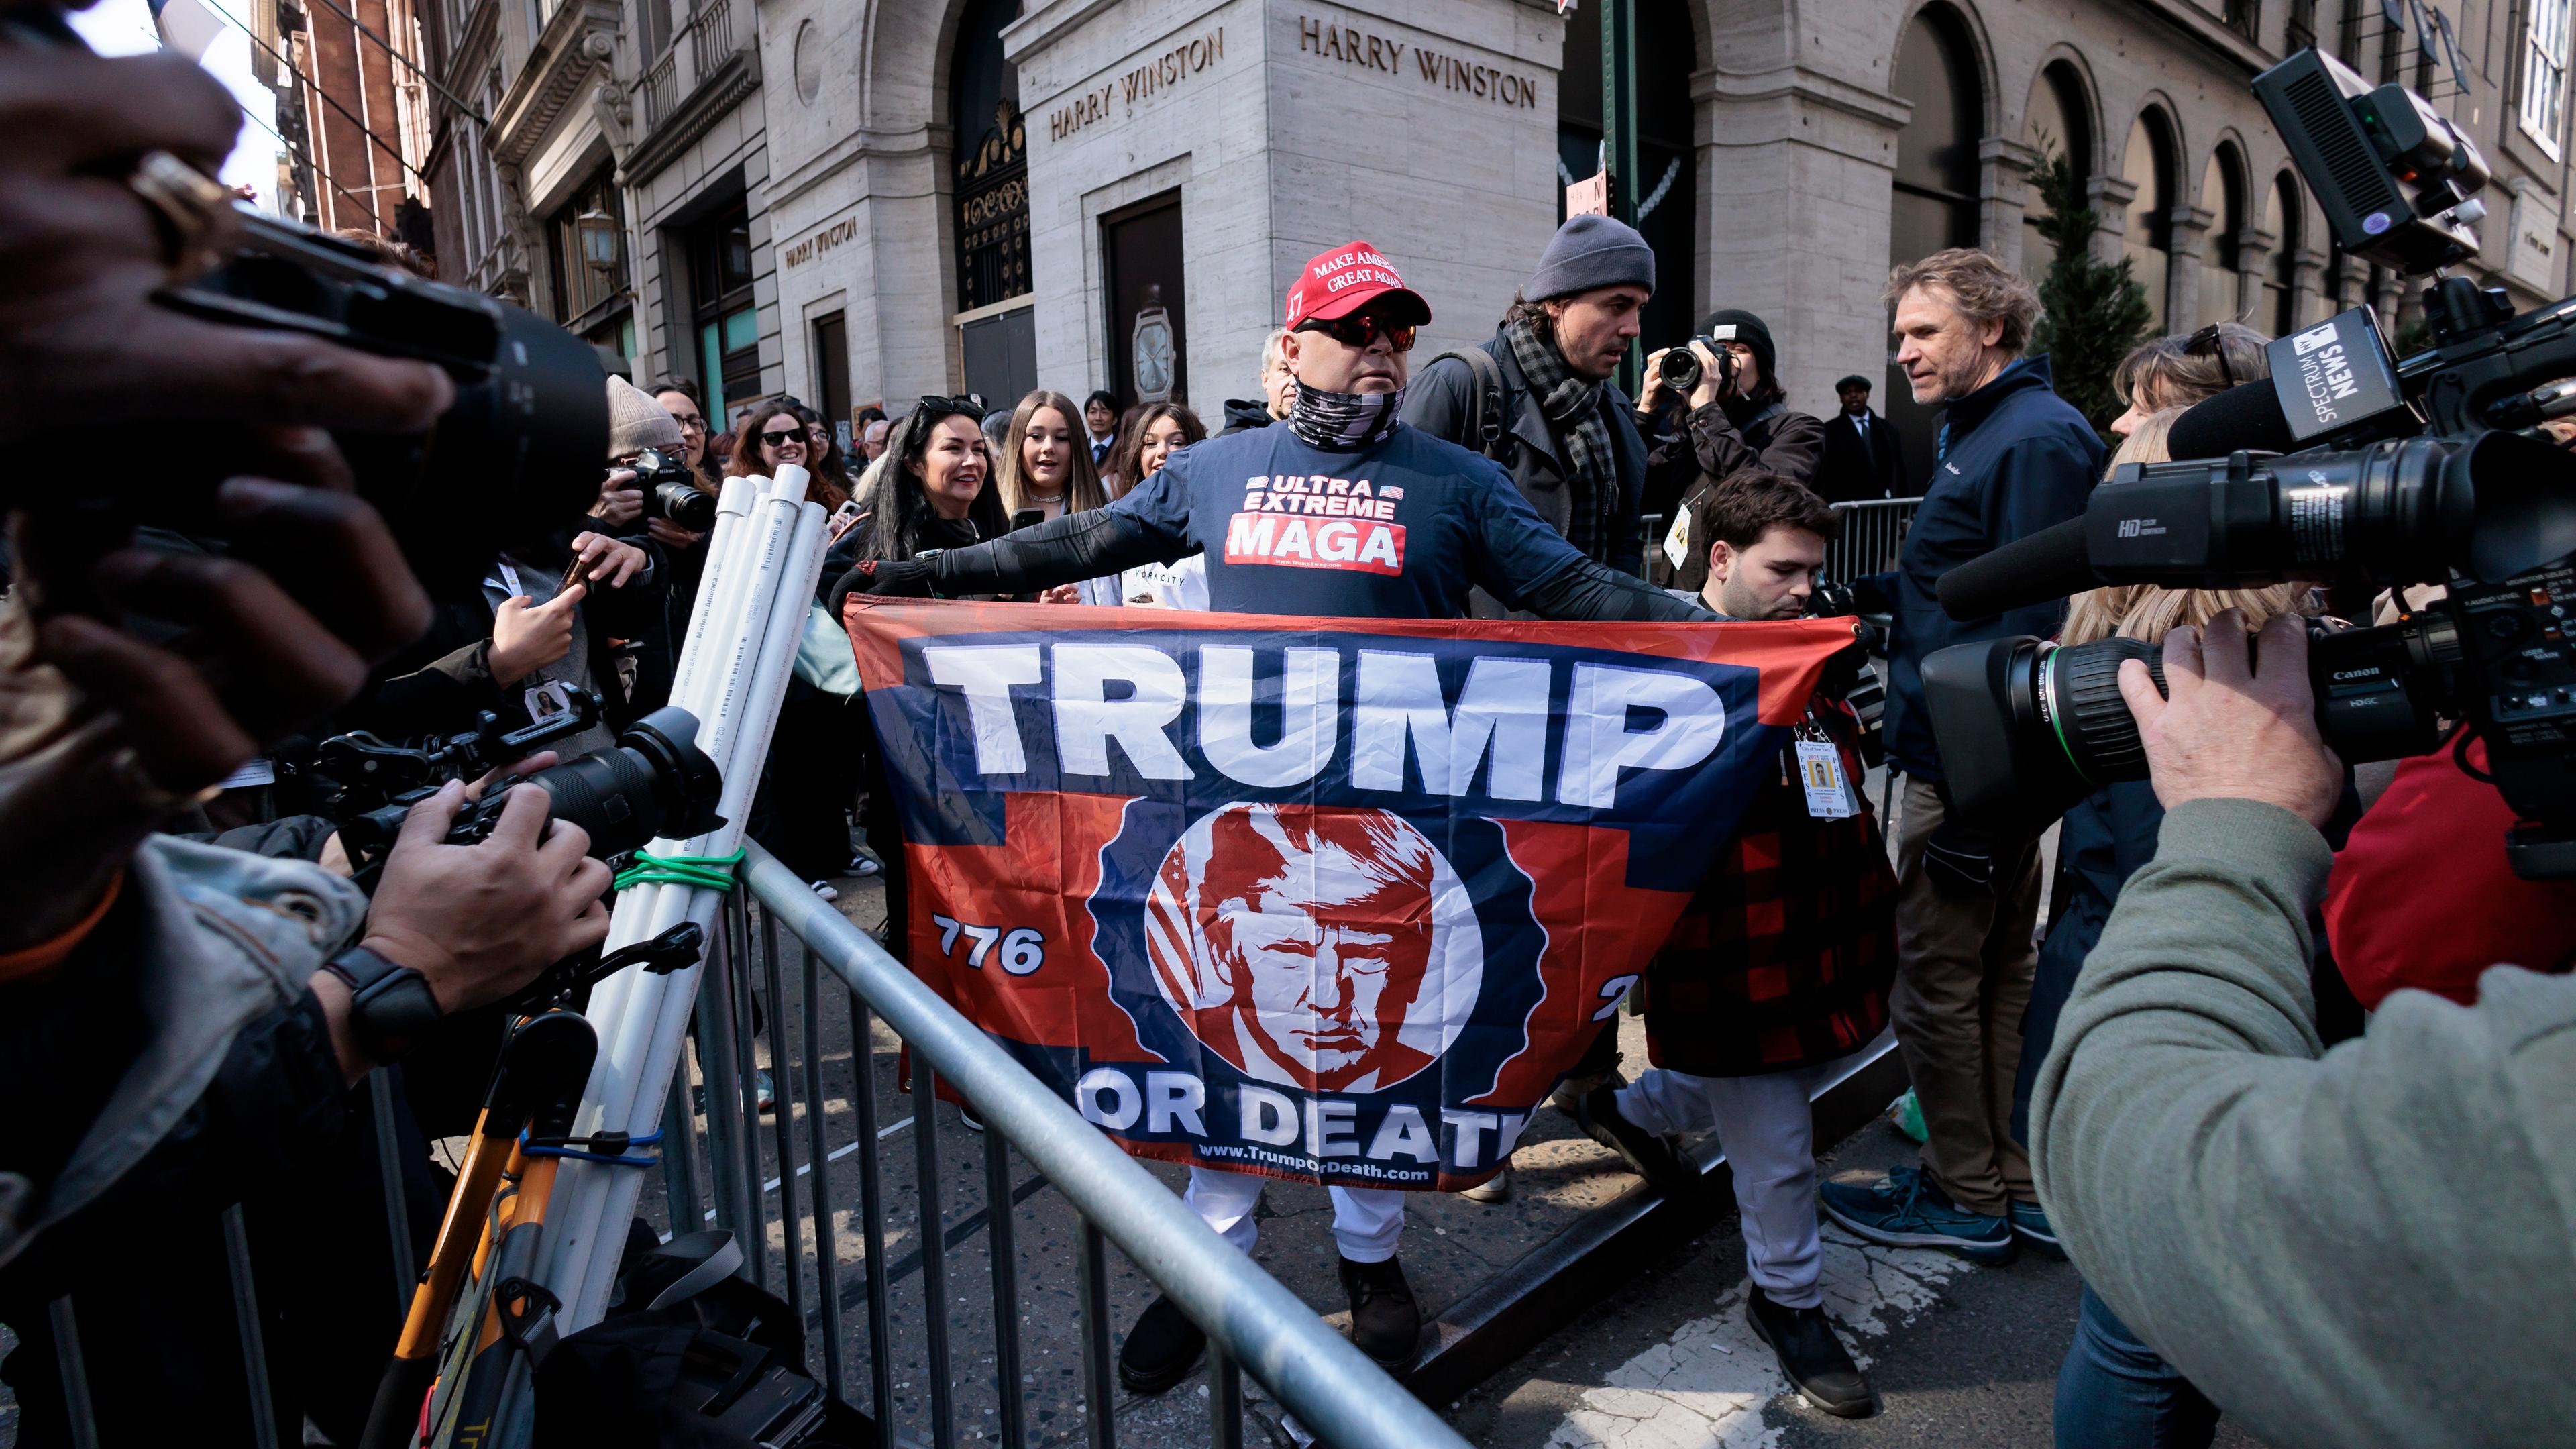 Ein Frau steht zwischen mehreren anderen Personen auf der Straße und hält eine Flagge mit der Aufschrift "Trump" in den Händen.